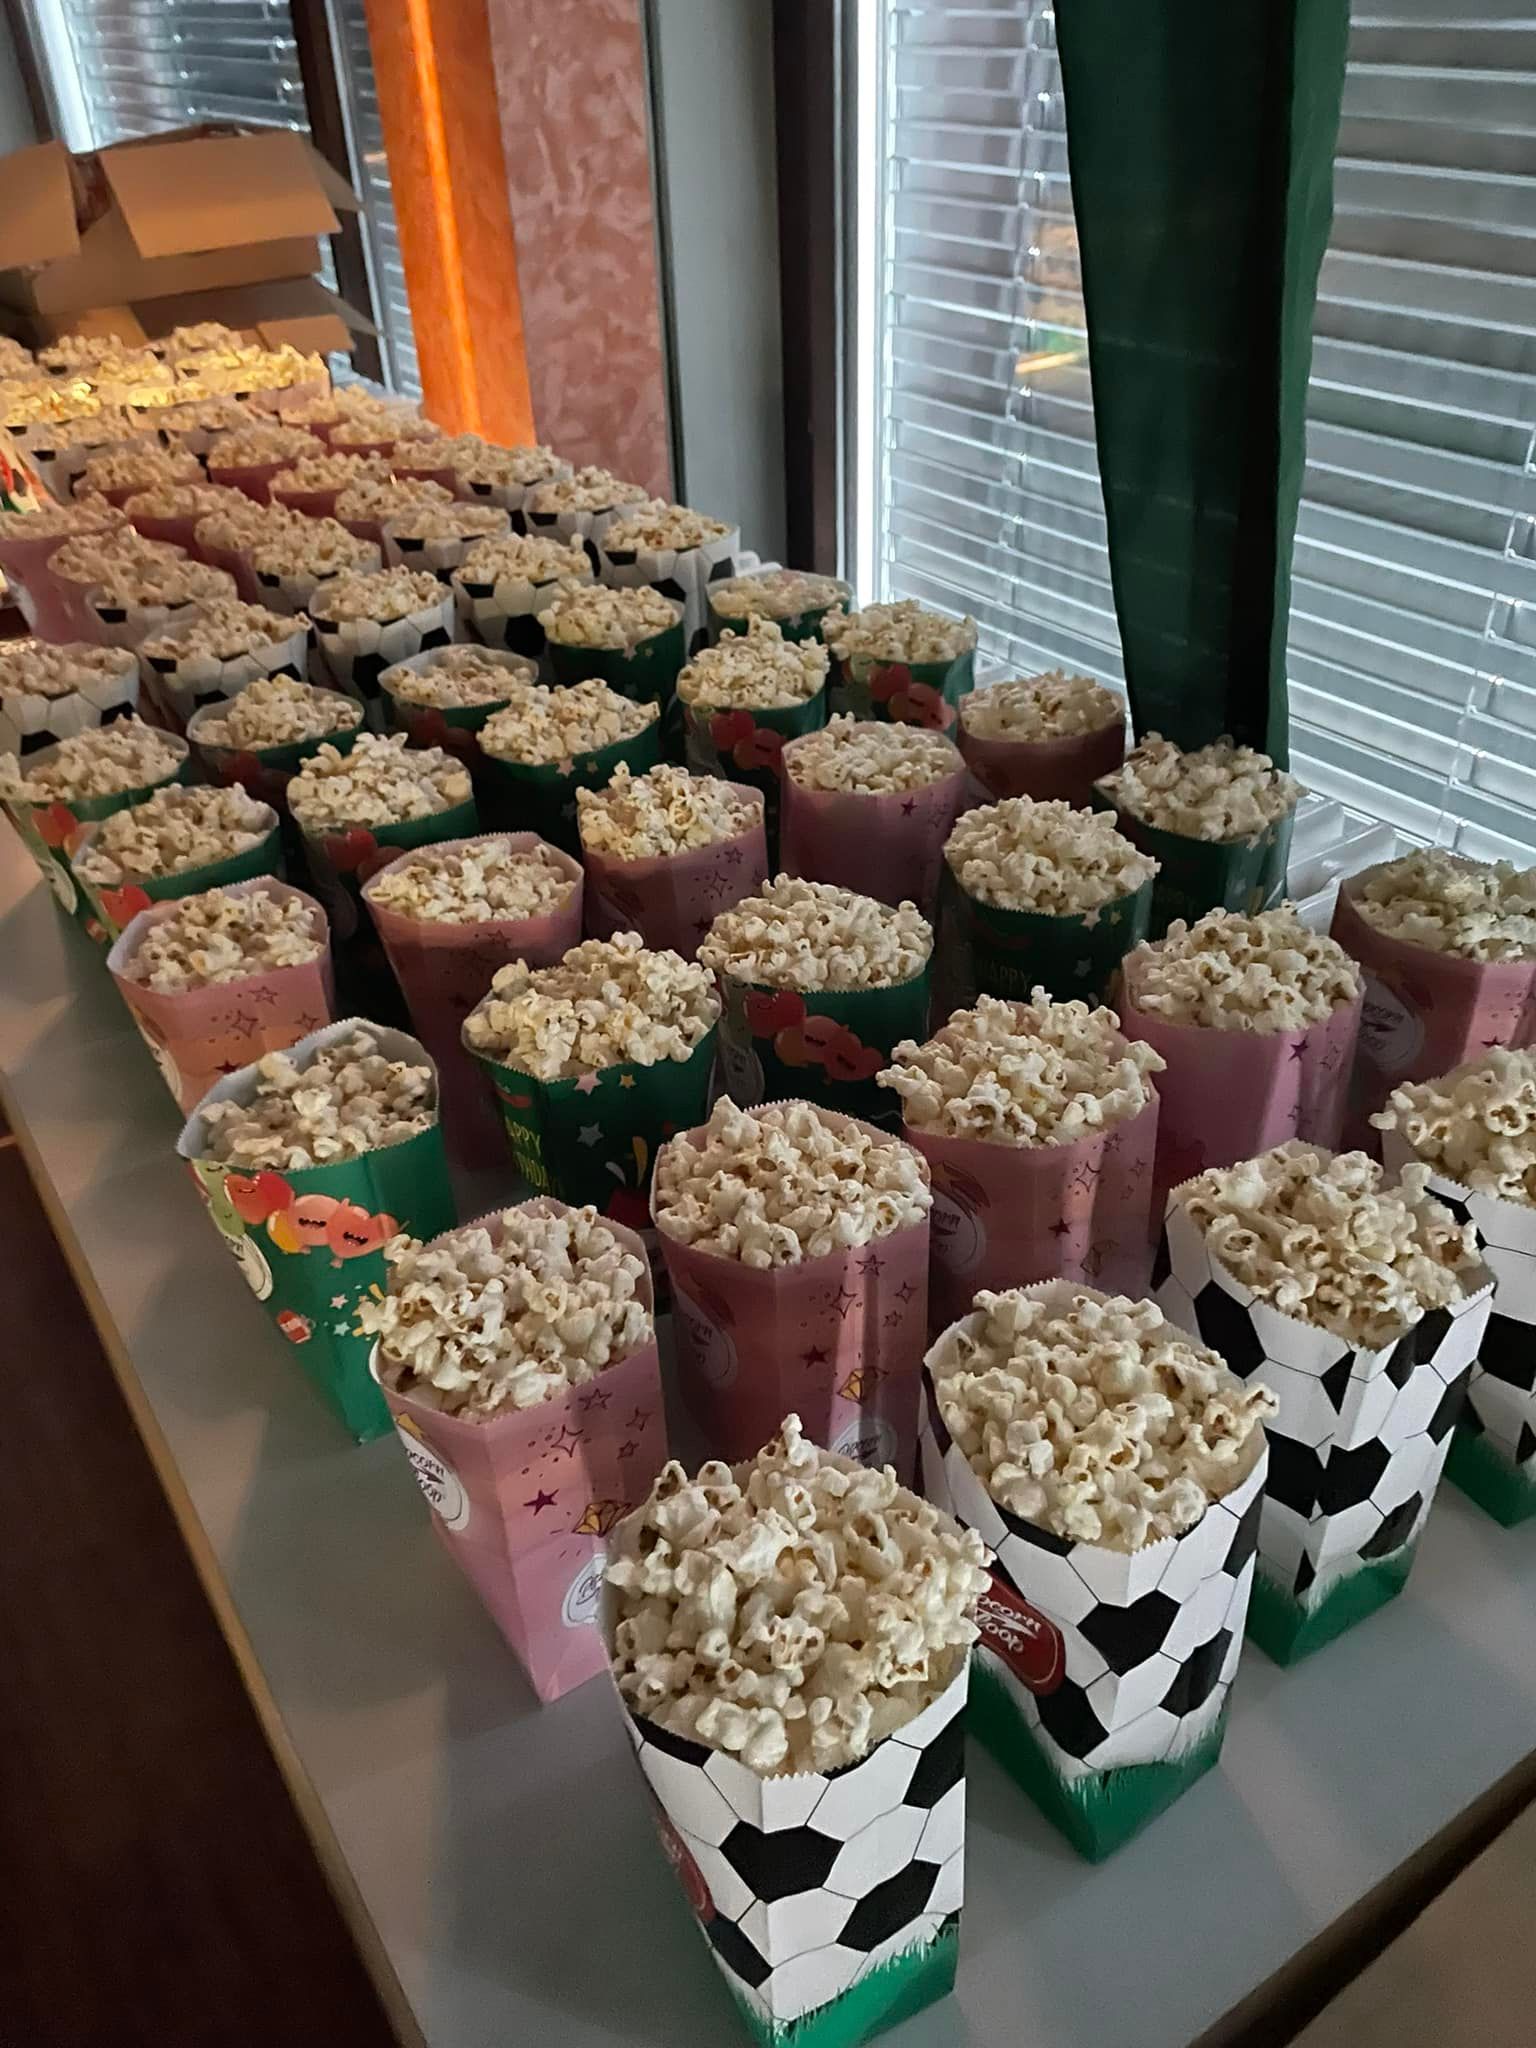 Auf diesem Bild sind einige mit Popcorn gefüllte Popcorntüten zu sehen.